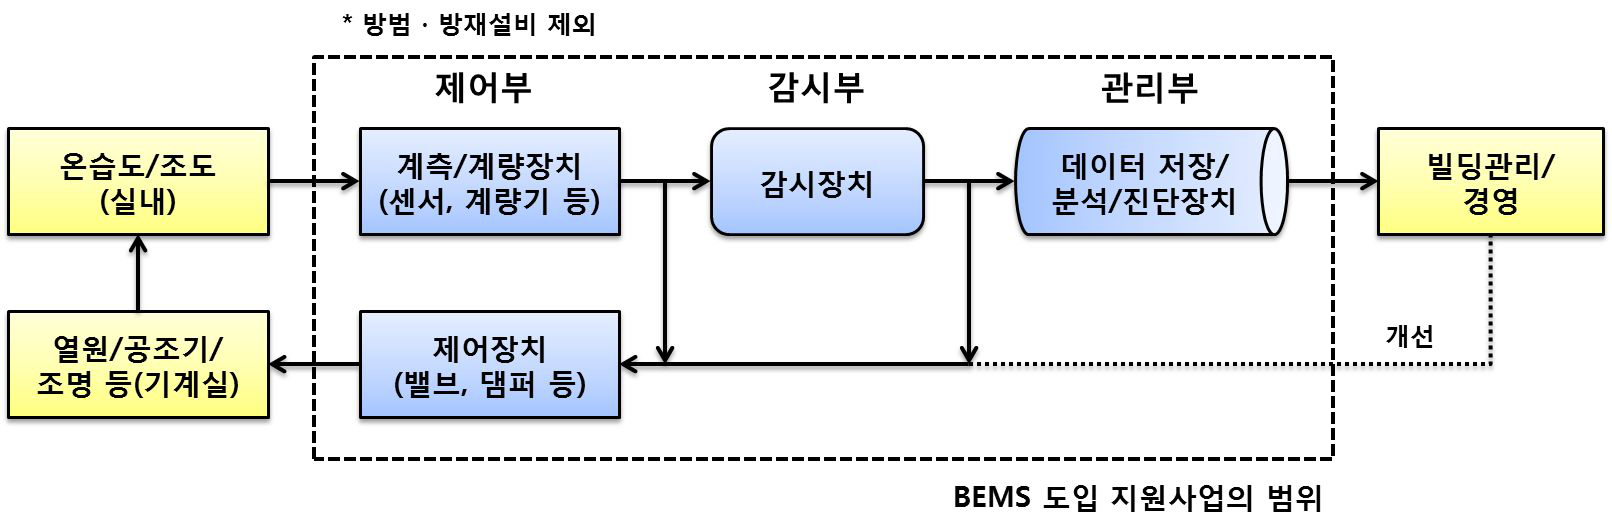 일본 BEMS 도입 지원사업 범위